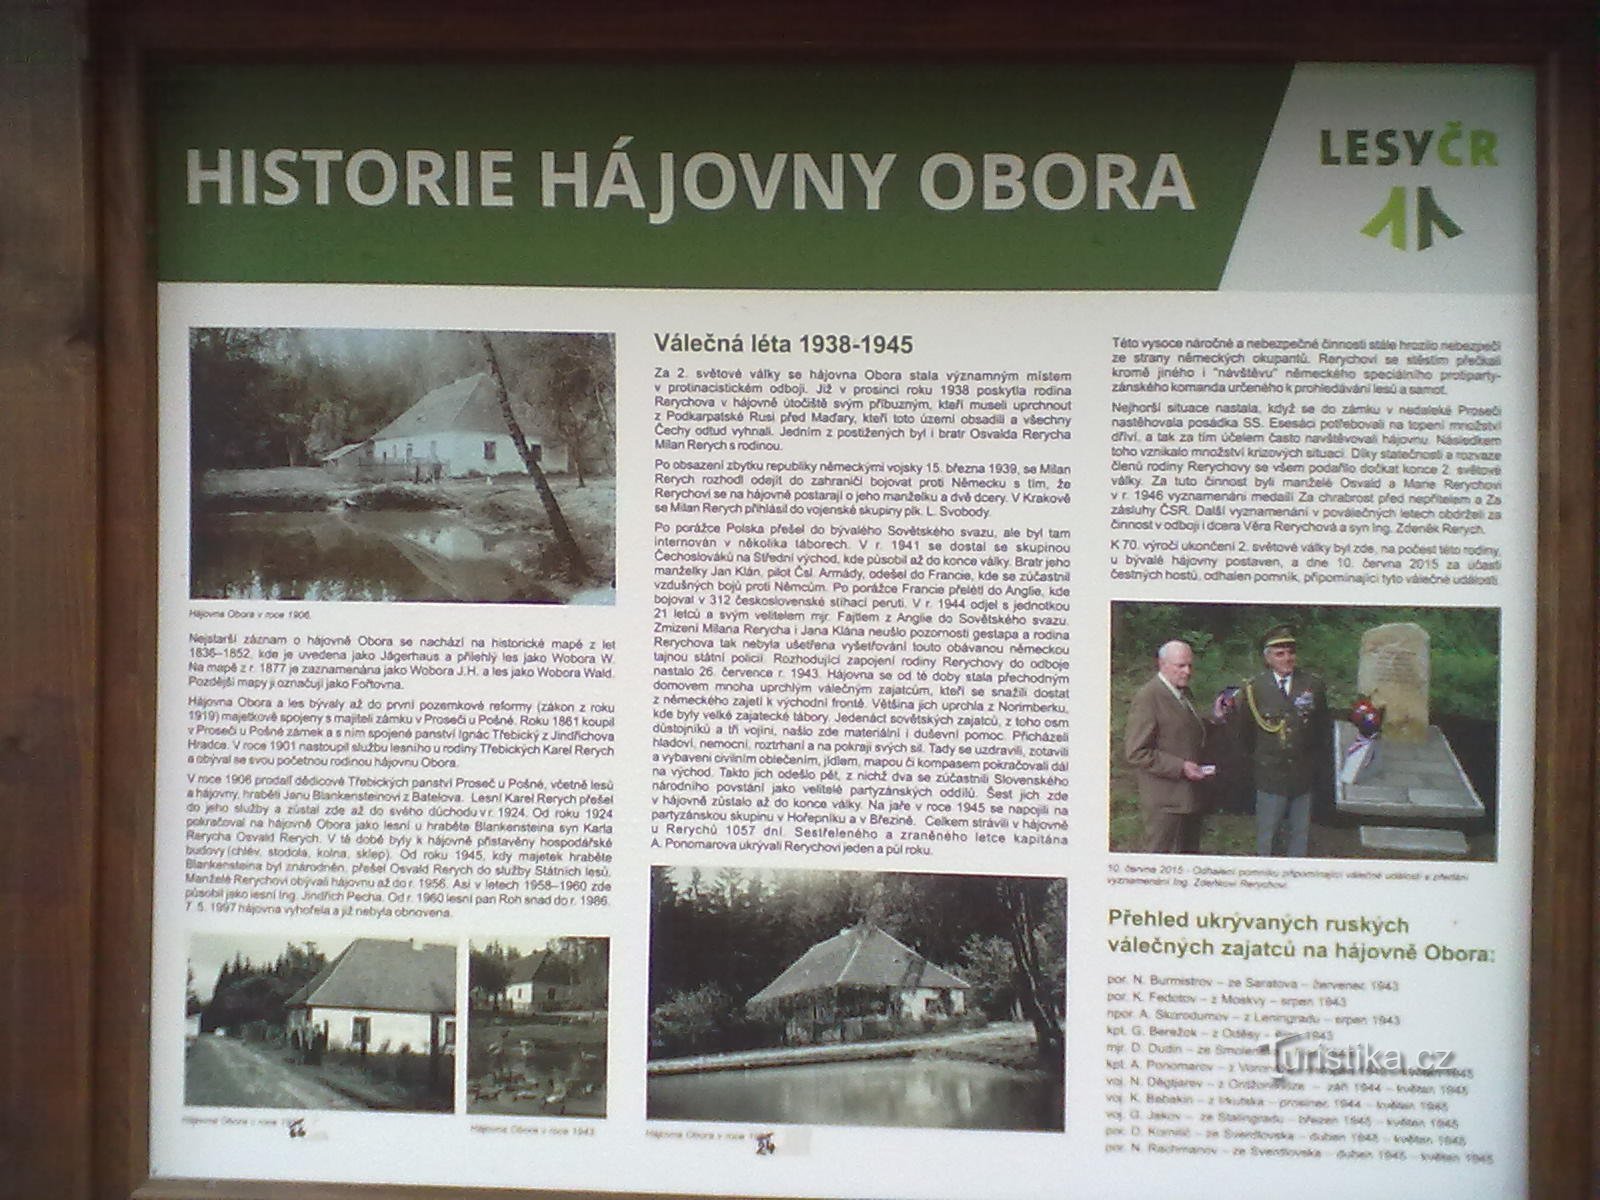 2. Az egykori Rerychov búvóhely - a háború alatt a család a koncentrációs táborok elől szökött foglyokat rejtegetett.